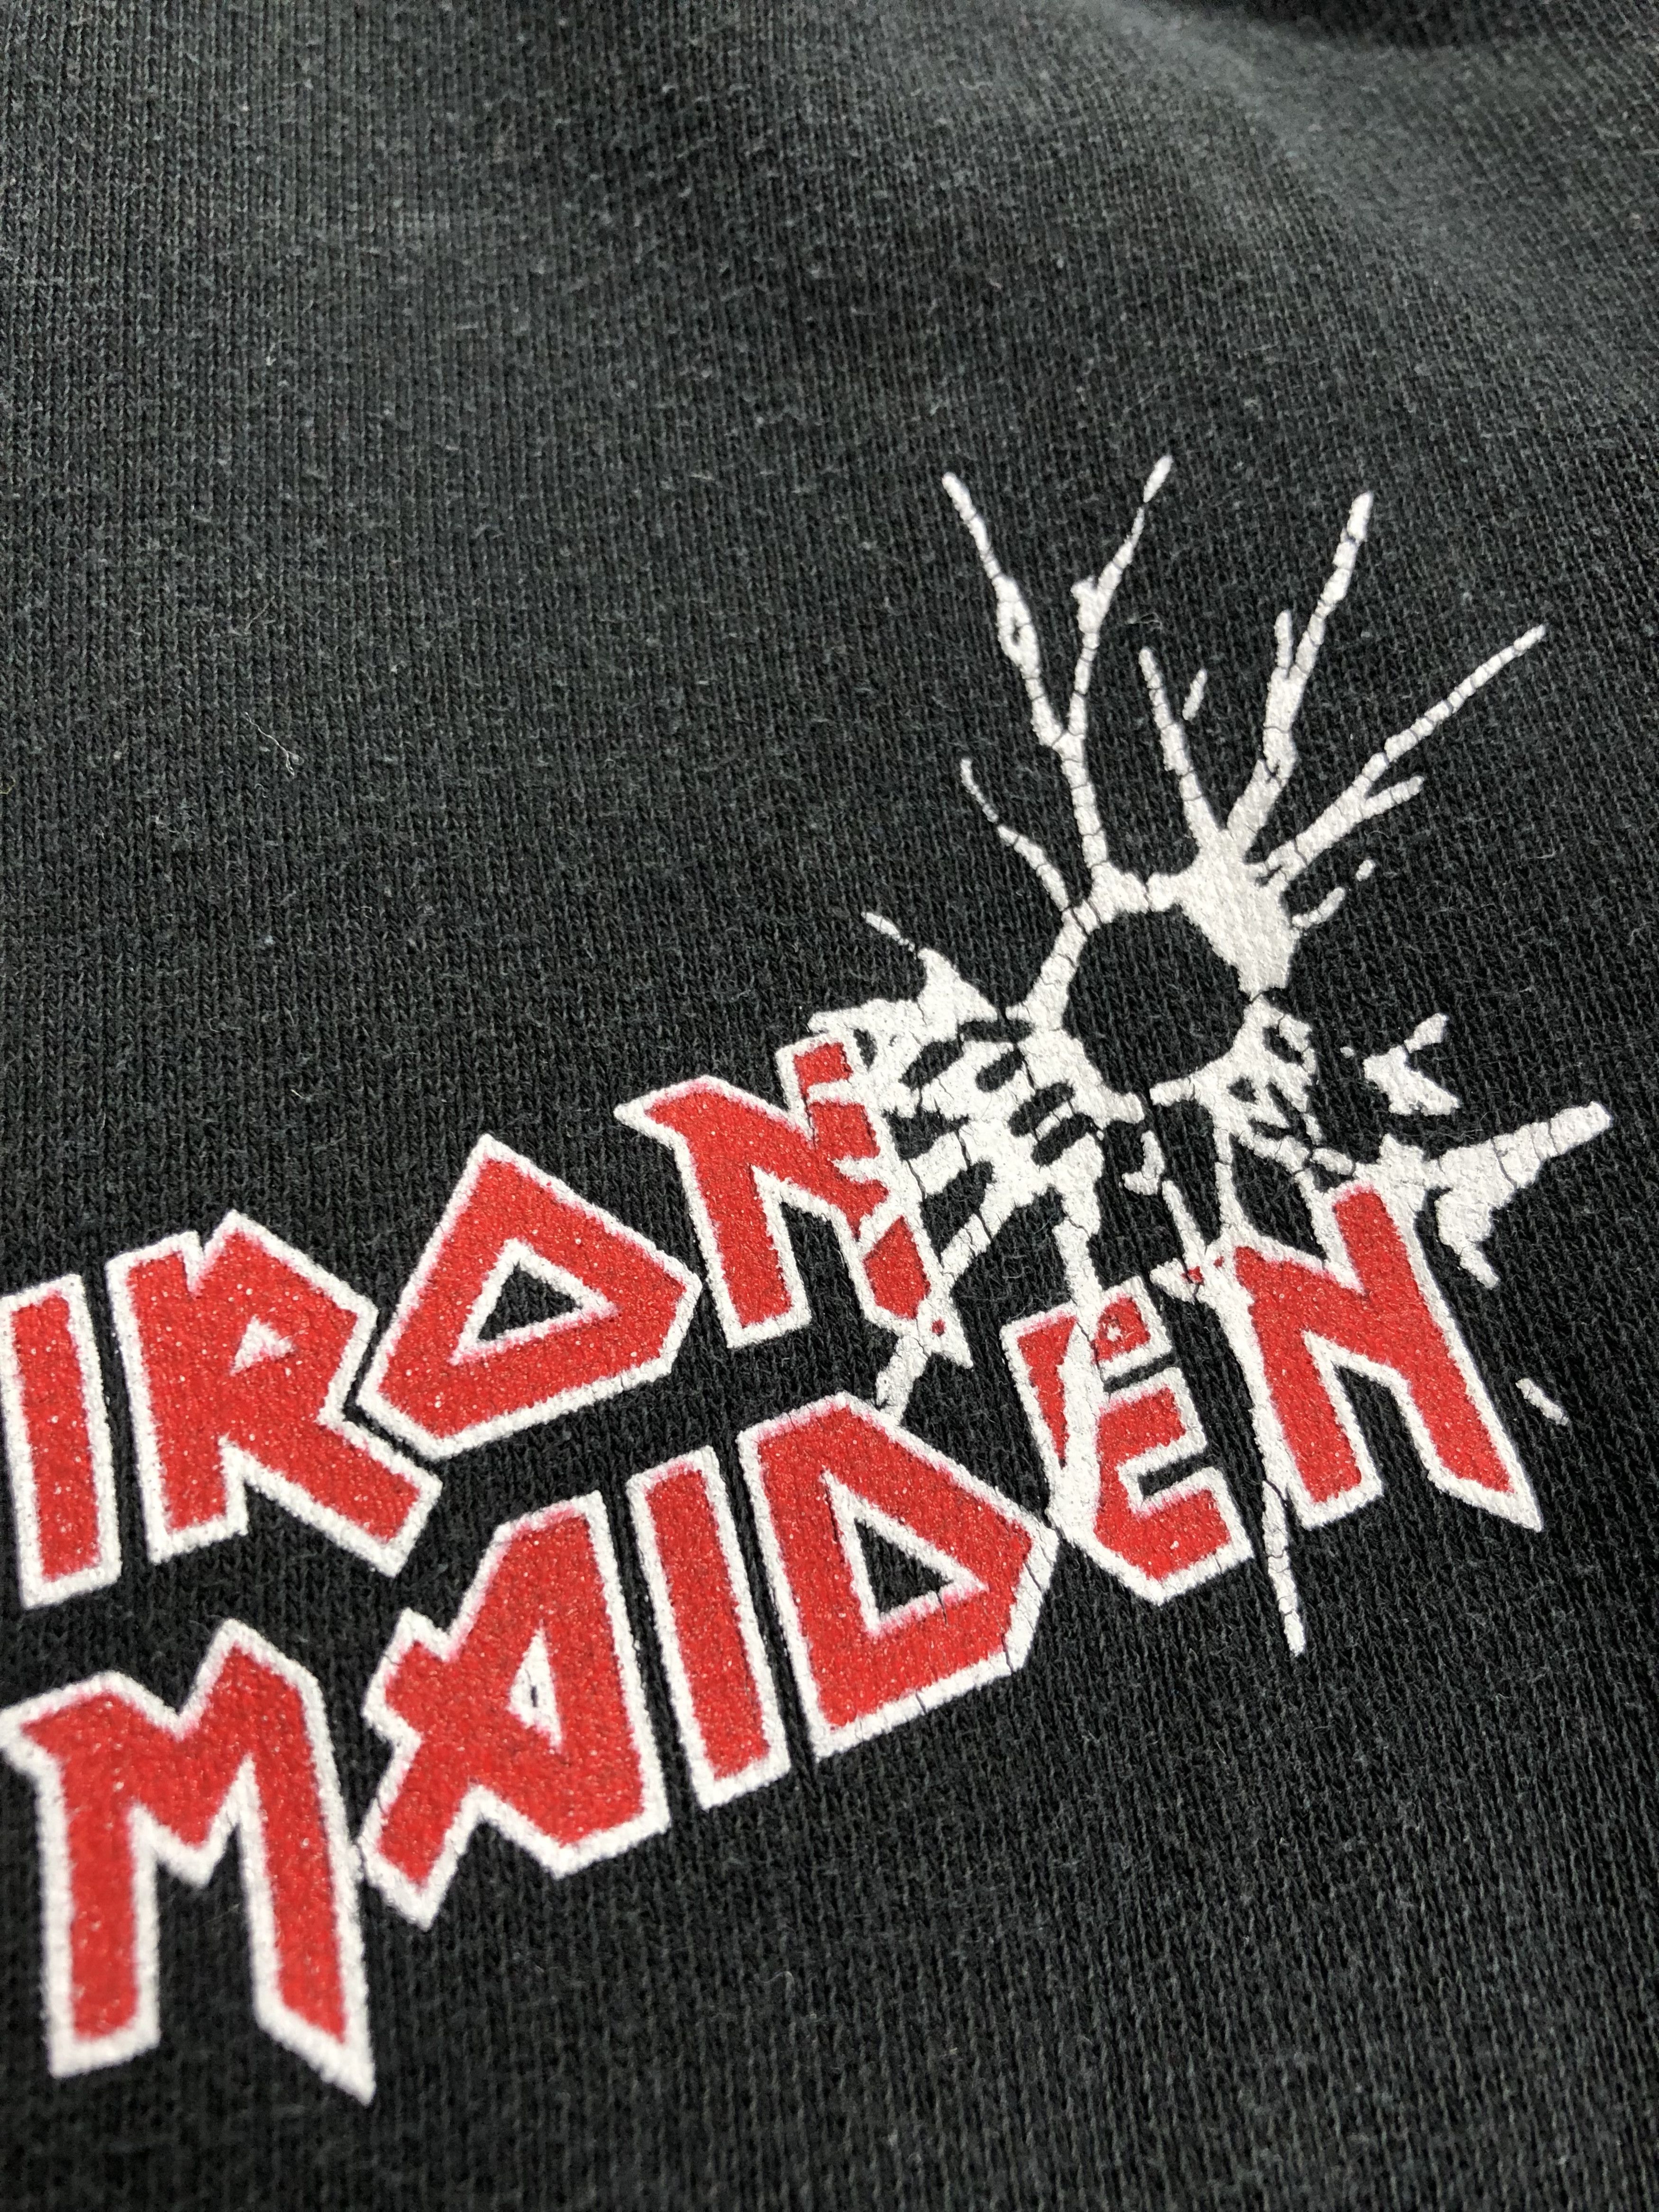 Vintage Vintage 2003 Iron Maiden Aces High hoodie (Black Sabbath) Size US L / EU 52-54 / 3 - 4 Thumbnail